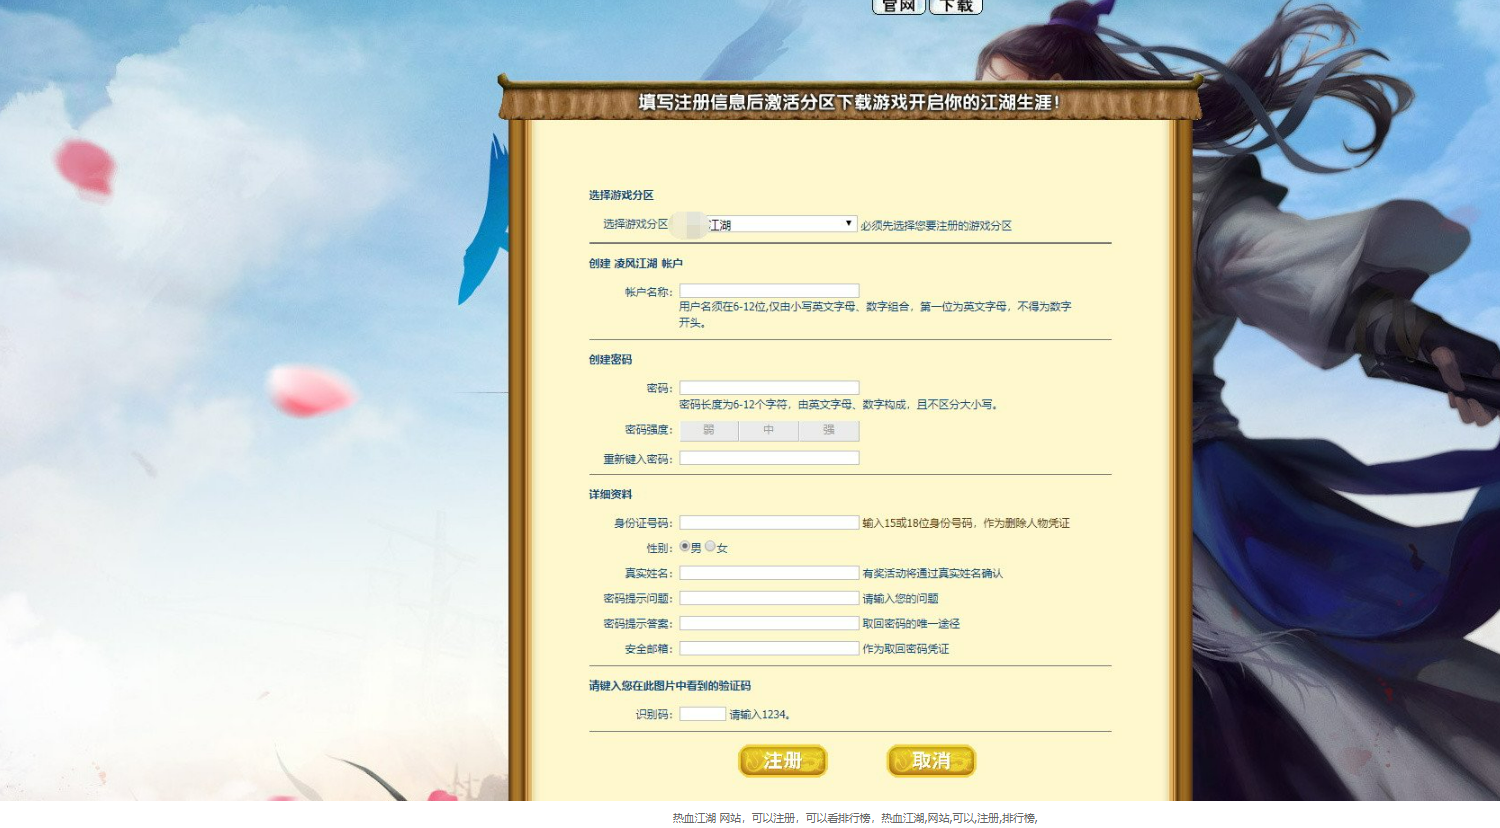 【热血江湖】热血江湖+网站+可以注册+可以看排行榜 GM后台 第2张